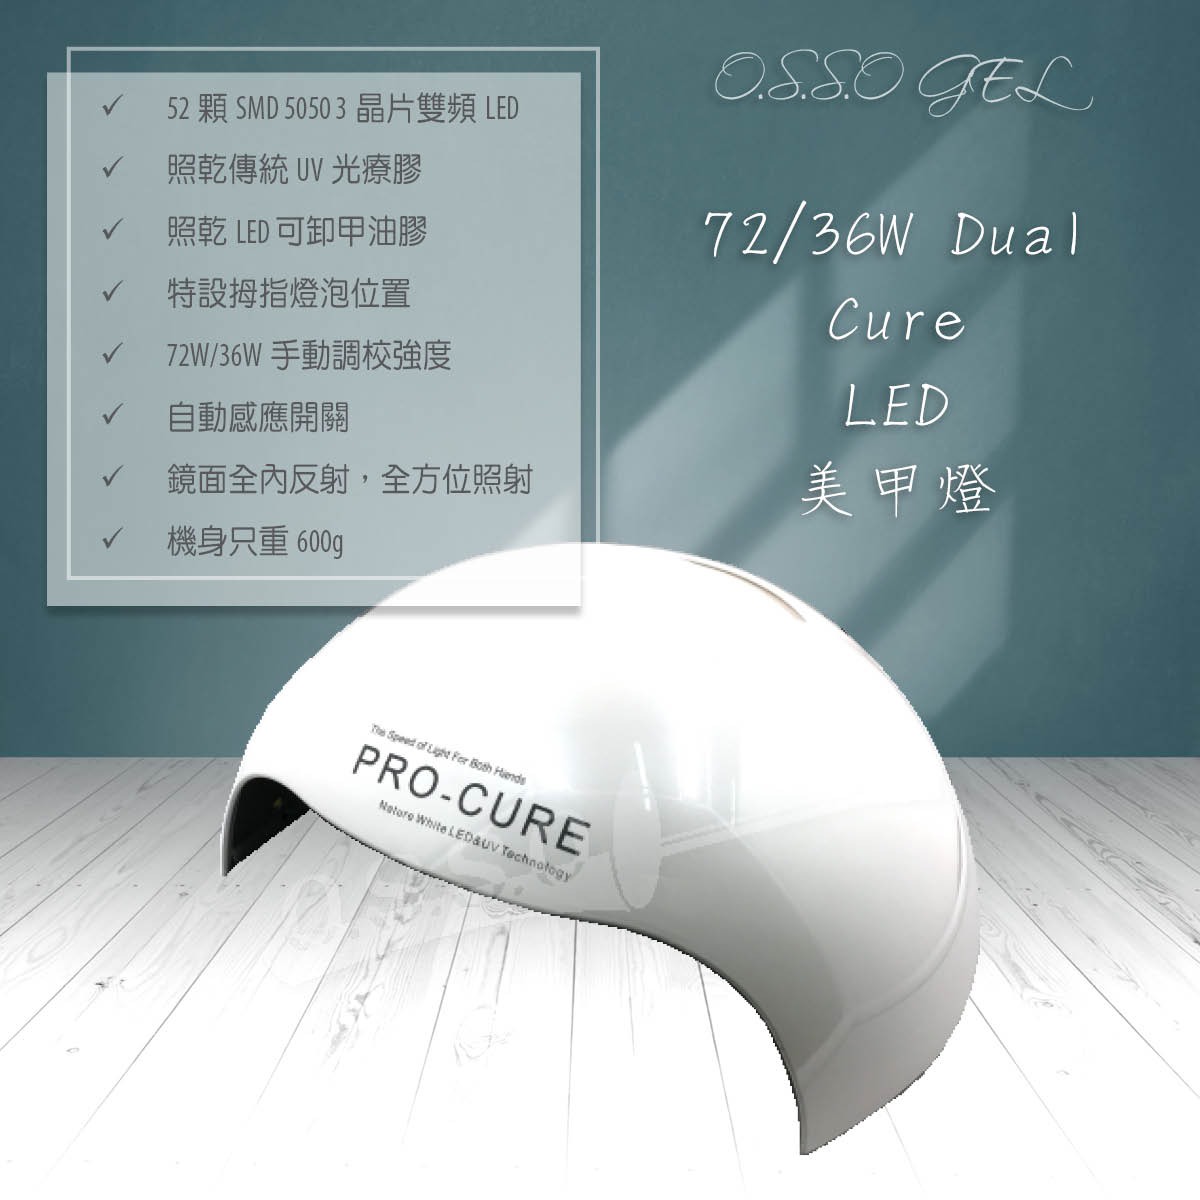 72W/36W Dual Cure 美甲燈